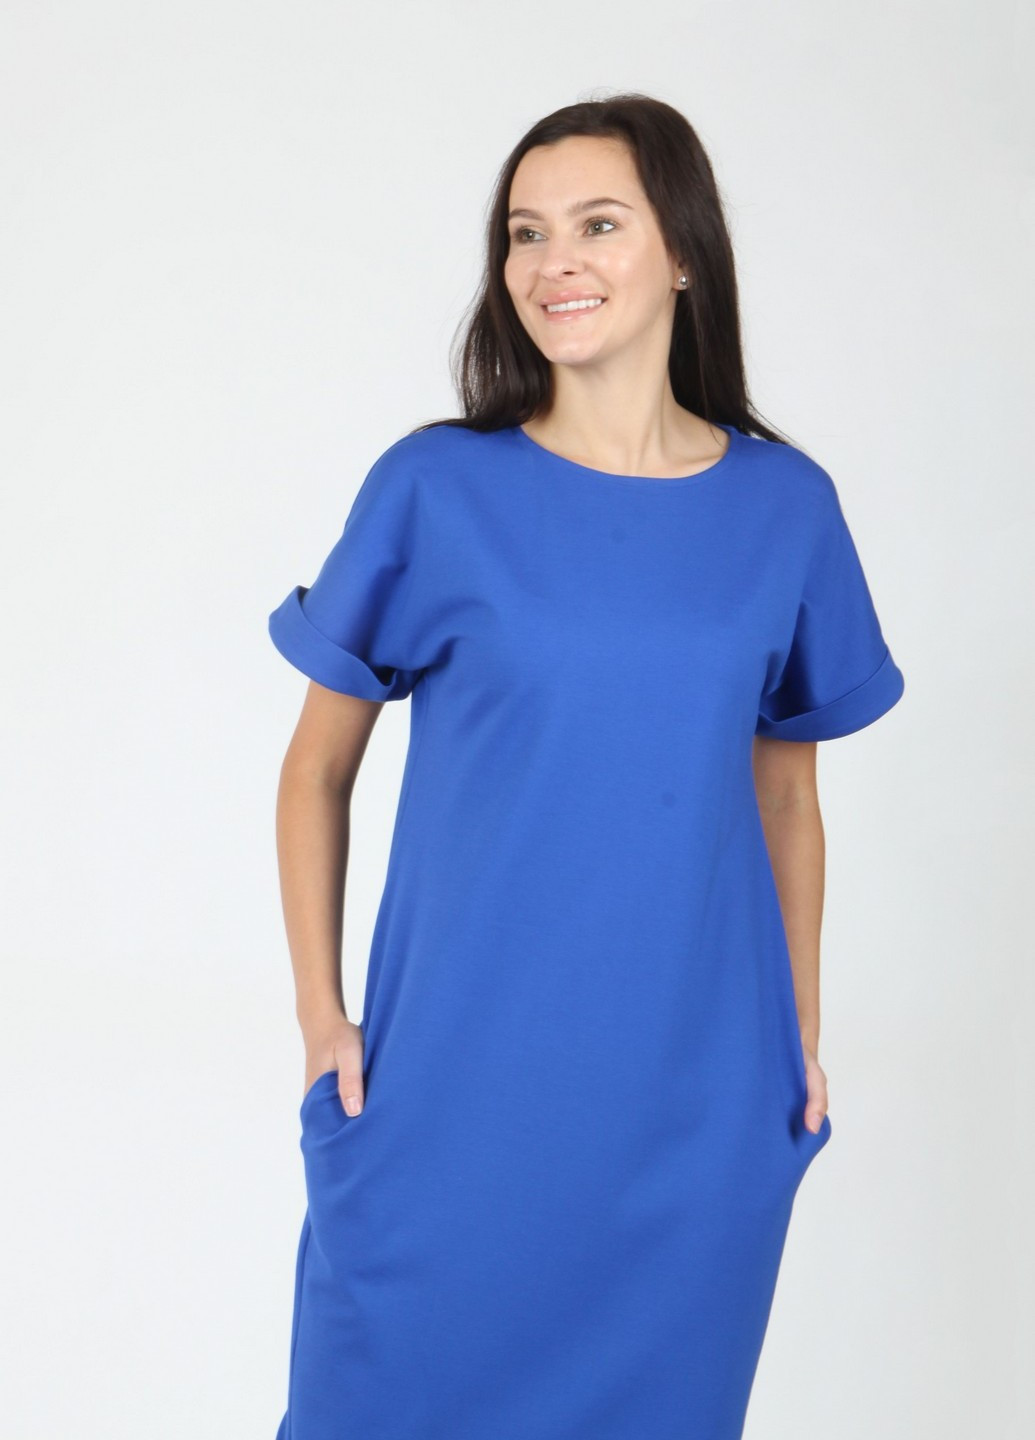 Синя вечірня плаття, сукня Mozah однотонна